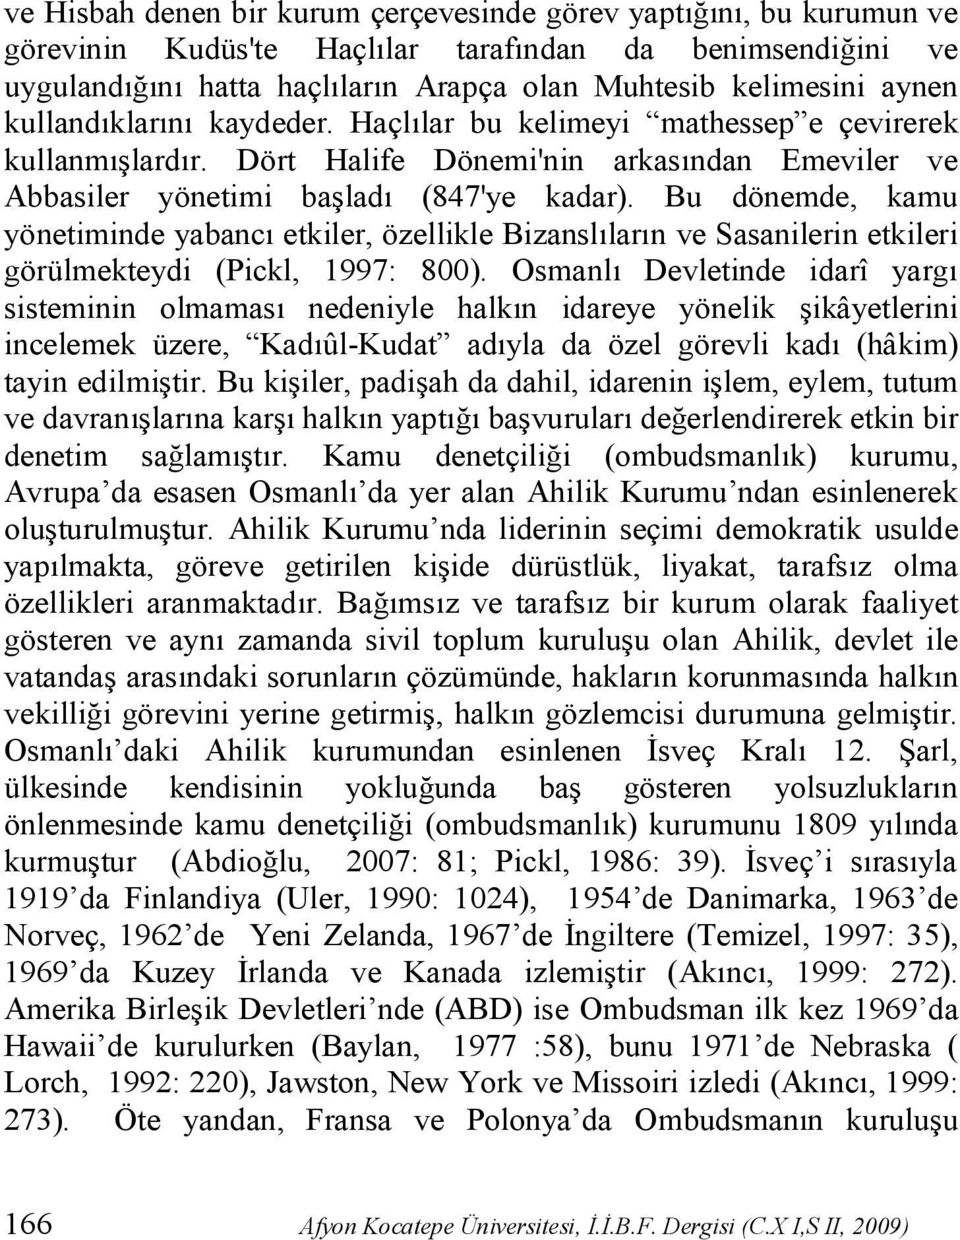 Bu dönemde, kamu yönetiminde yabancı etkiler, özellikle Bizanslıların ve Sasanilerin etkileri görülmekteydi (Pickl, 1997: 800).